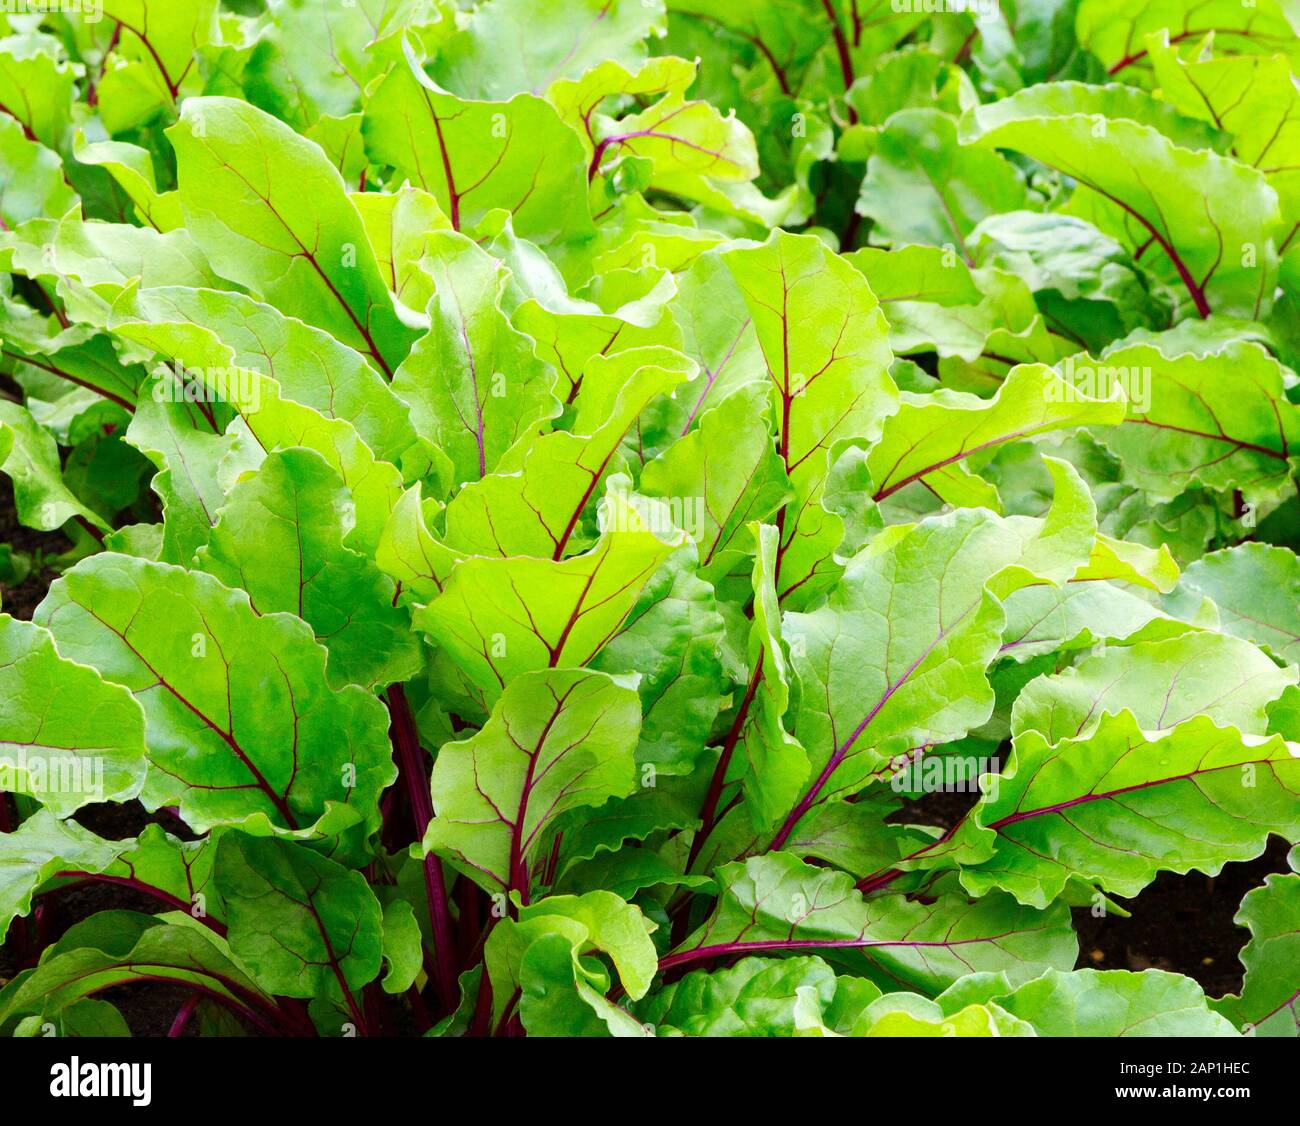 Rübenblätter. Rote Bete, frische Rüben bringen uns den Hintergrund. Rübengrüne Blätter im Feld. Rüben lässt Wachstum in Biobauernhof zurück. Stockfoto